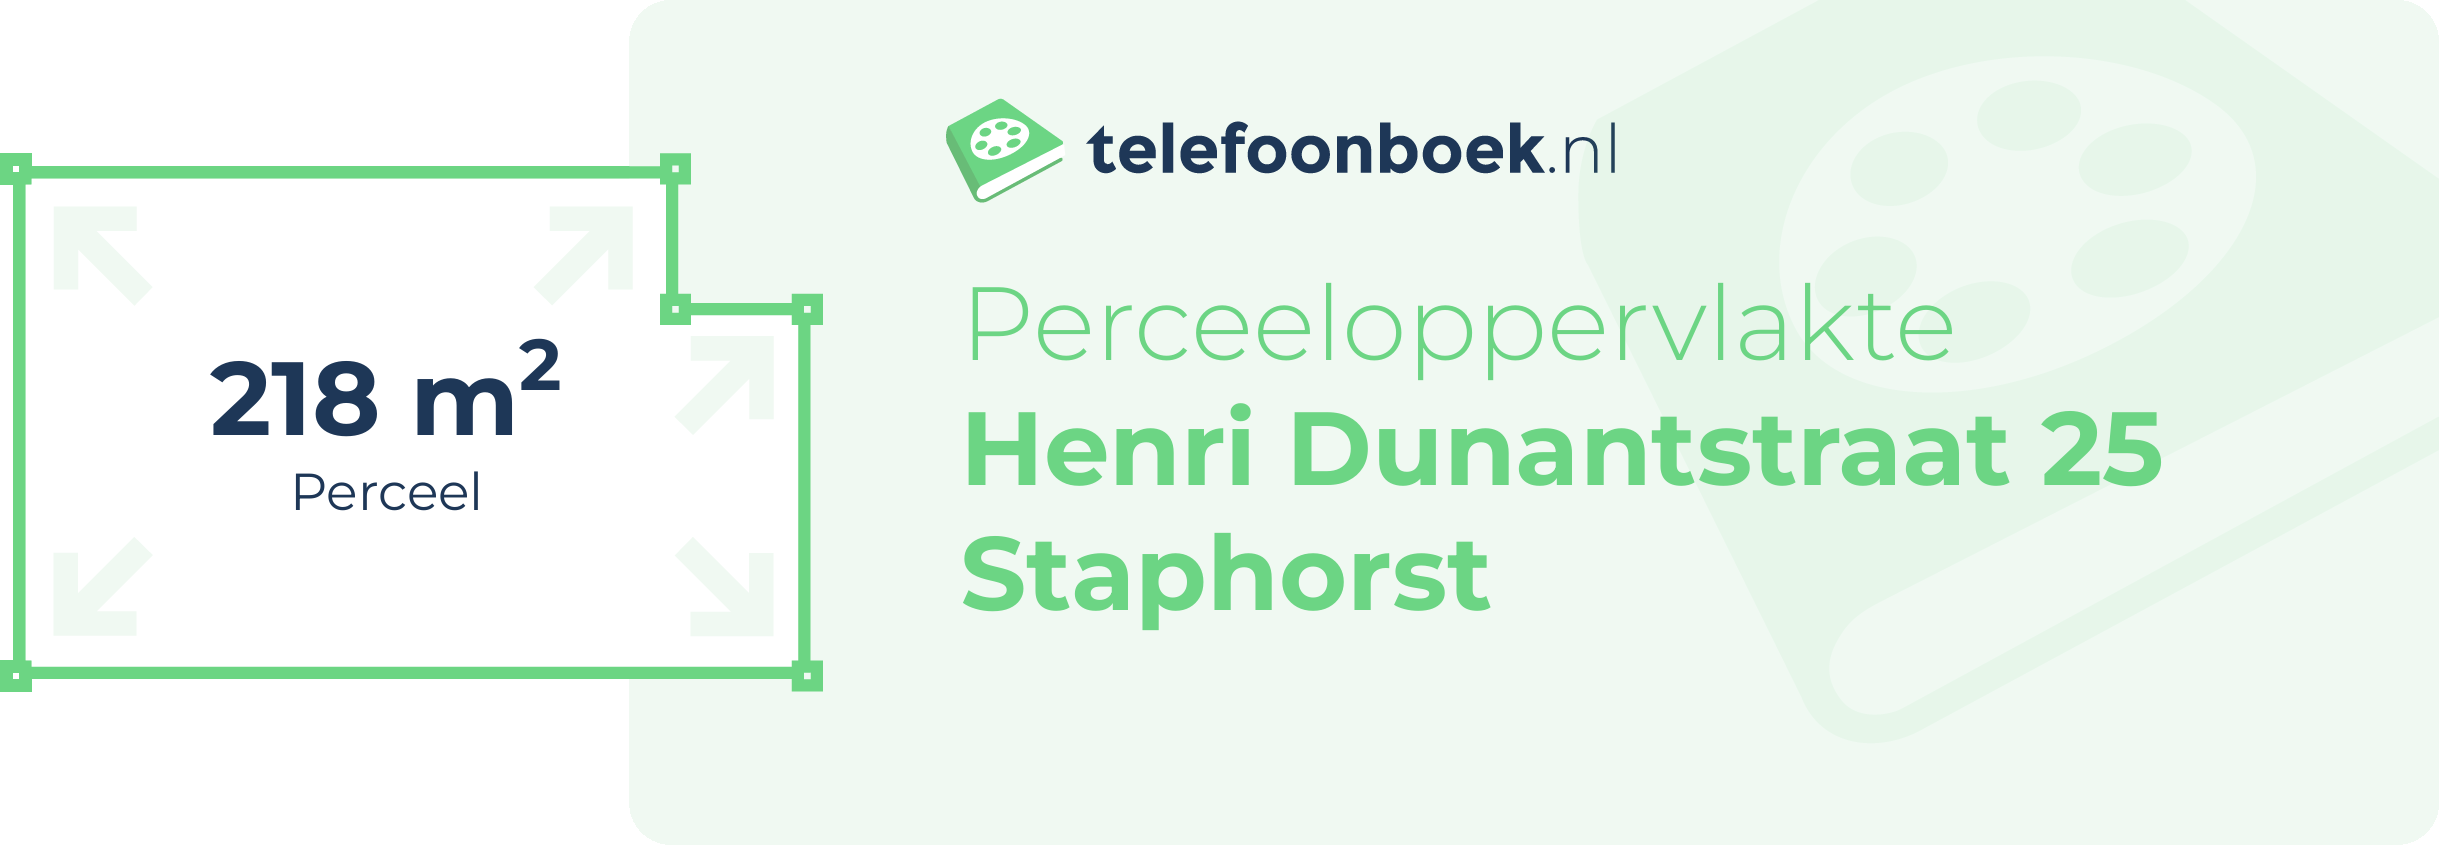 Perceeloppervlakte Henri Dunantstraat 25 Staphorst